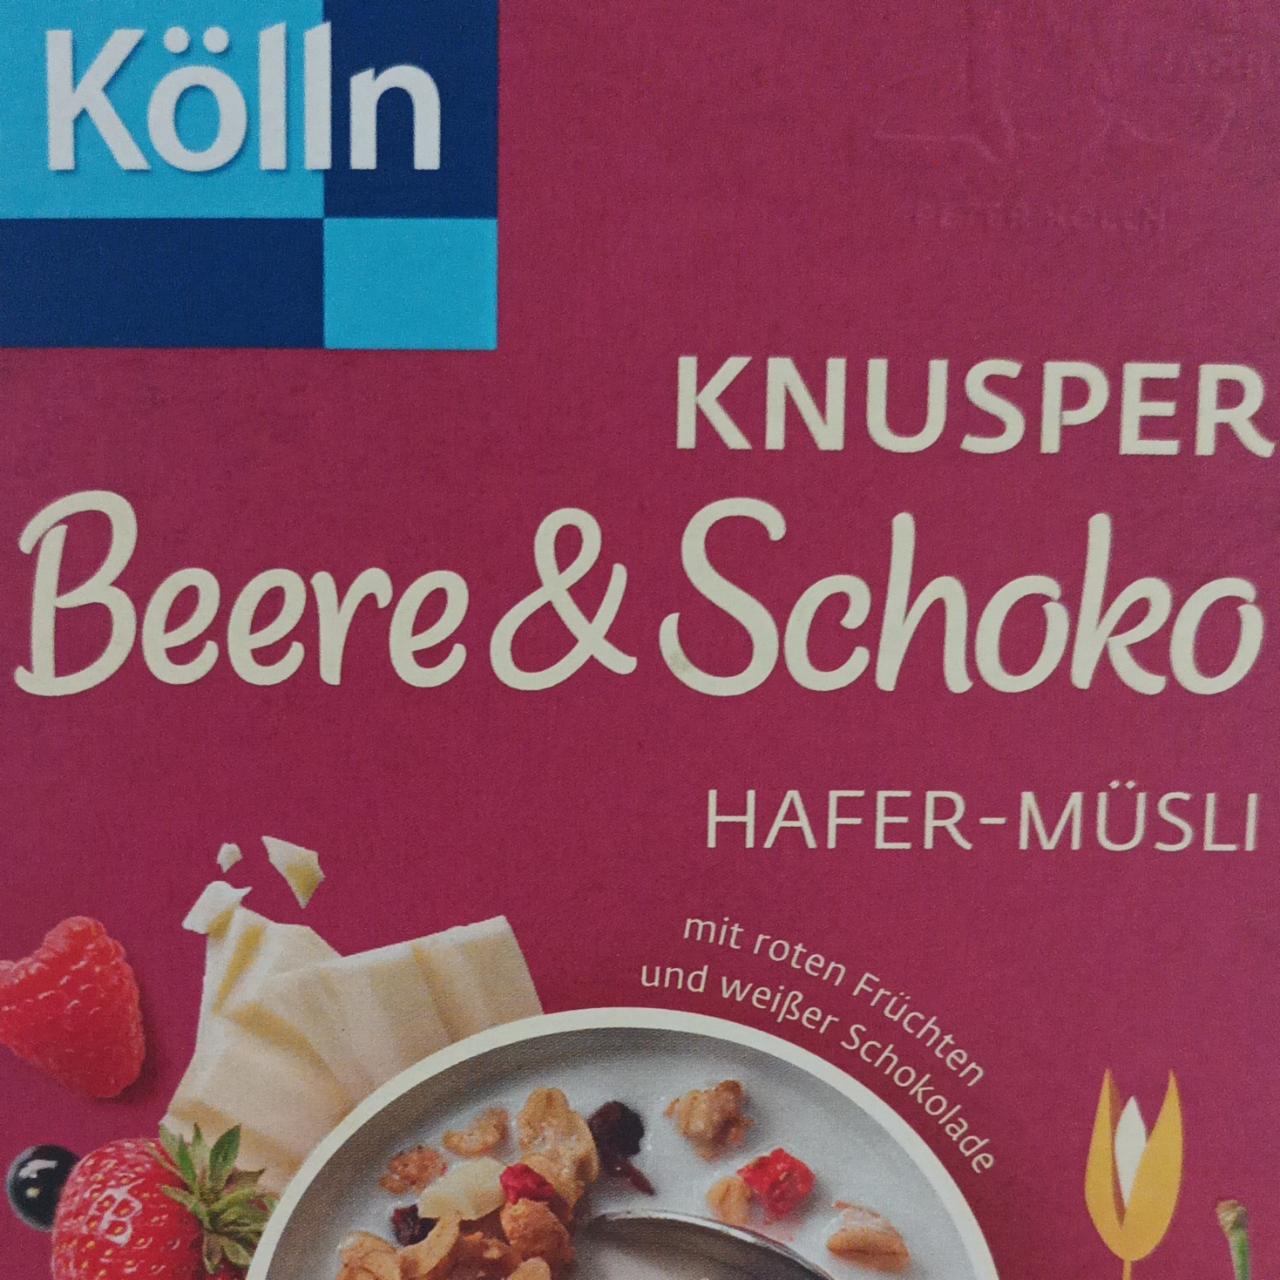 Фото - мюсли с ягодями и белым шоколадом Kölln